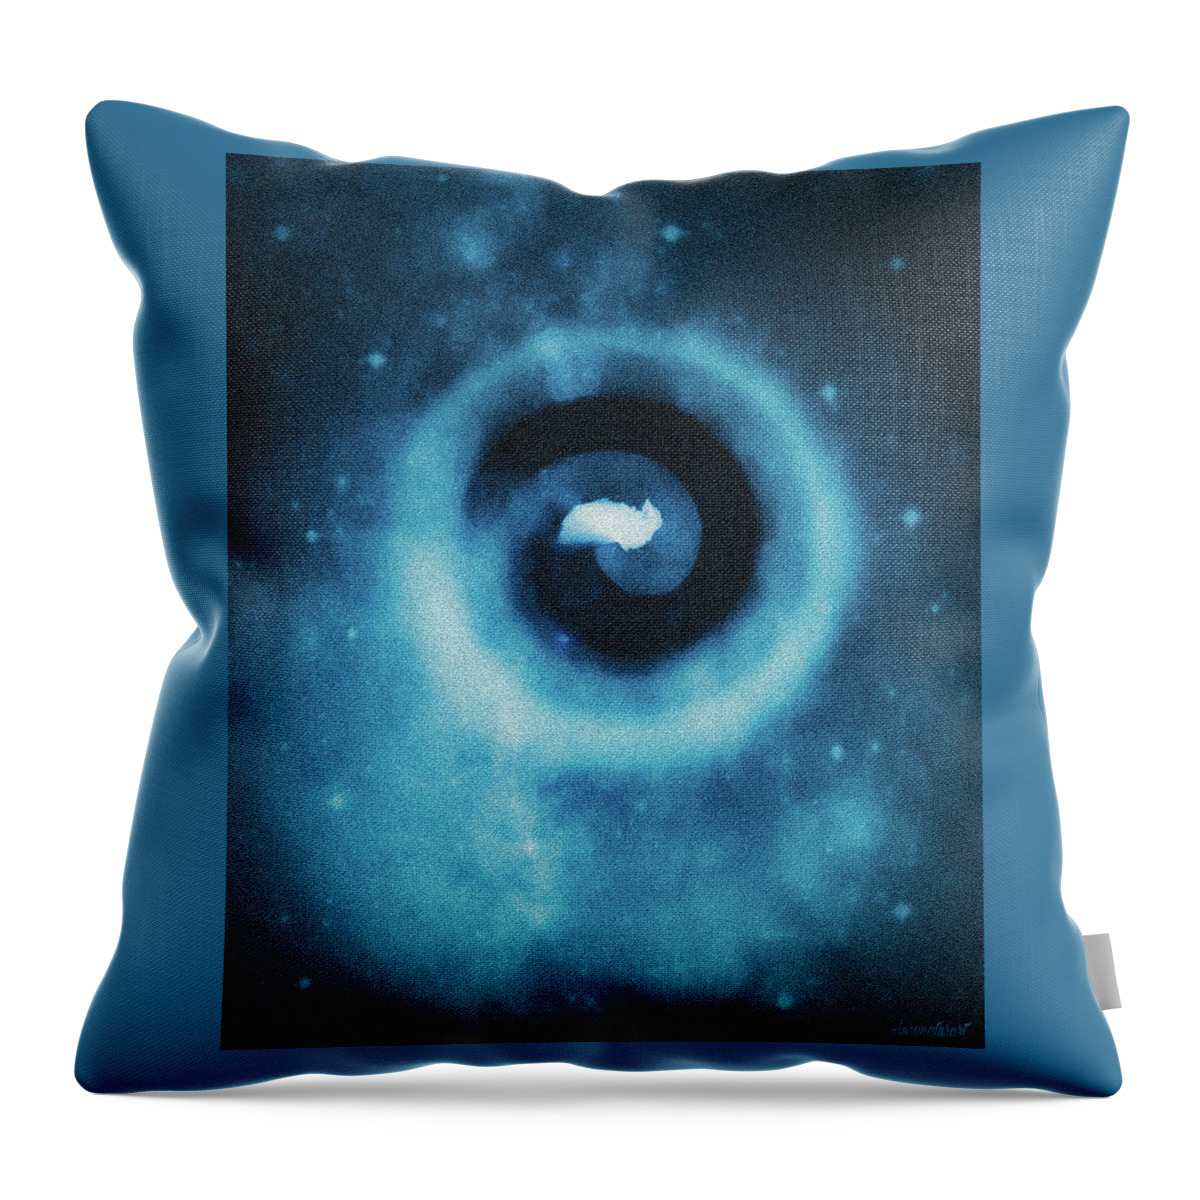 Spiral Throw Pillow featuring the digital art Spiral Ocean by Auranatura Art